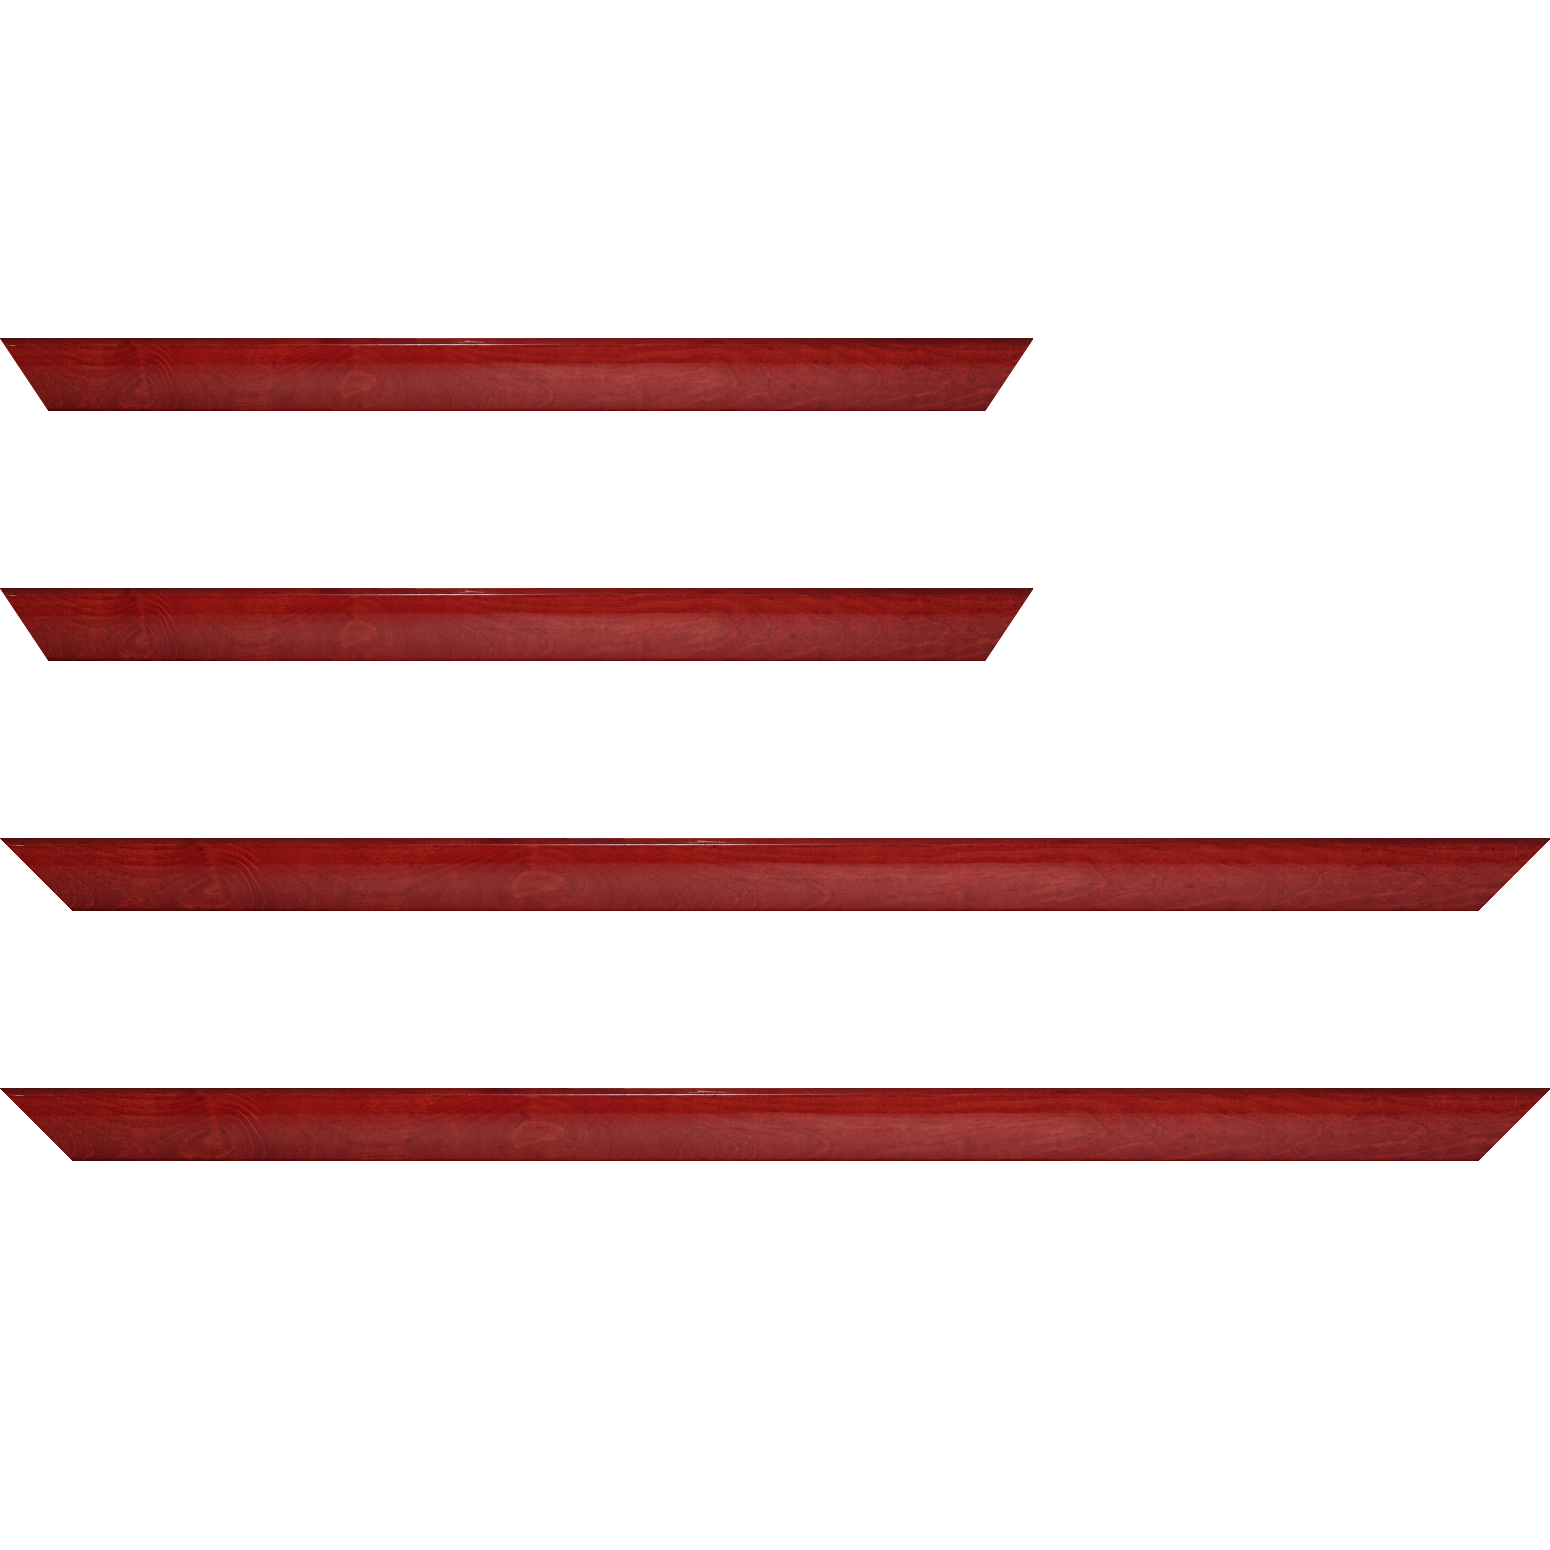 Baguette bois profil arrondi en pente plongeant largeur 2.4cm couleur rouge cerise finition vernis brillant,veine du bois  apparent (pin) , - 35x24